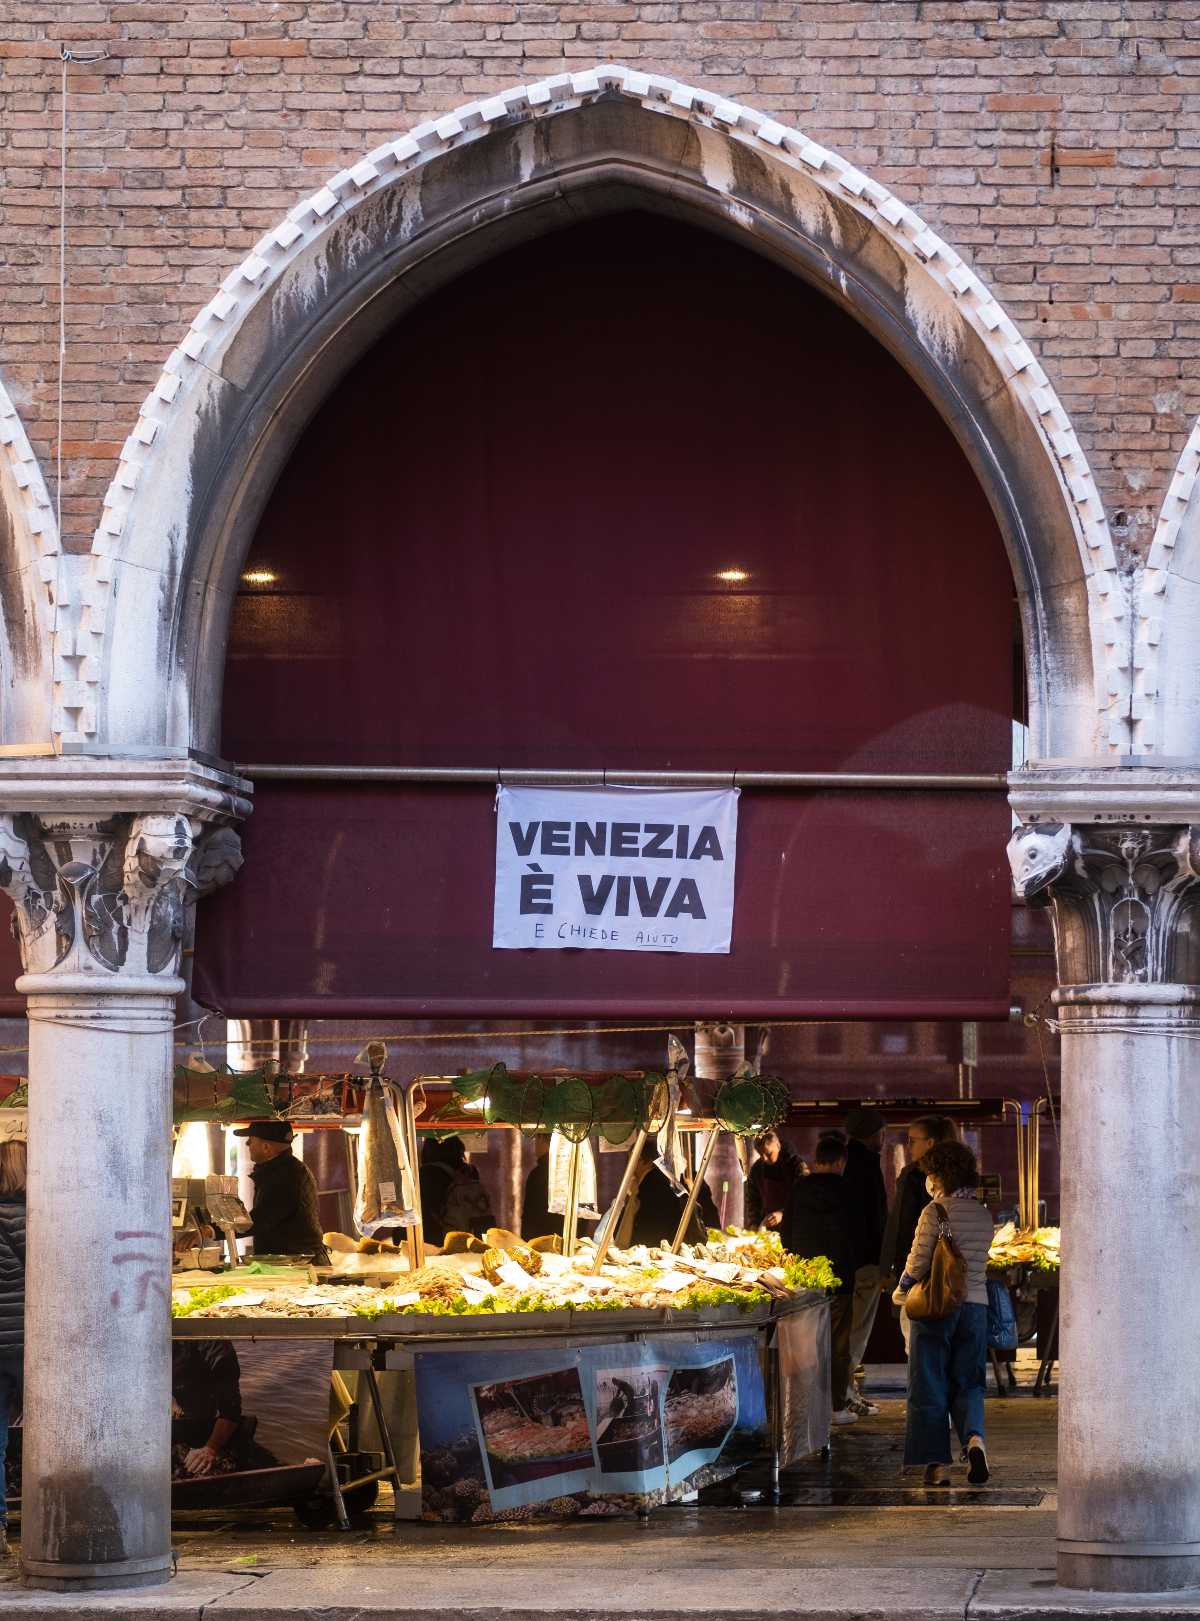 Mercato di Rialto - Venezia e viva